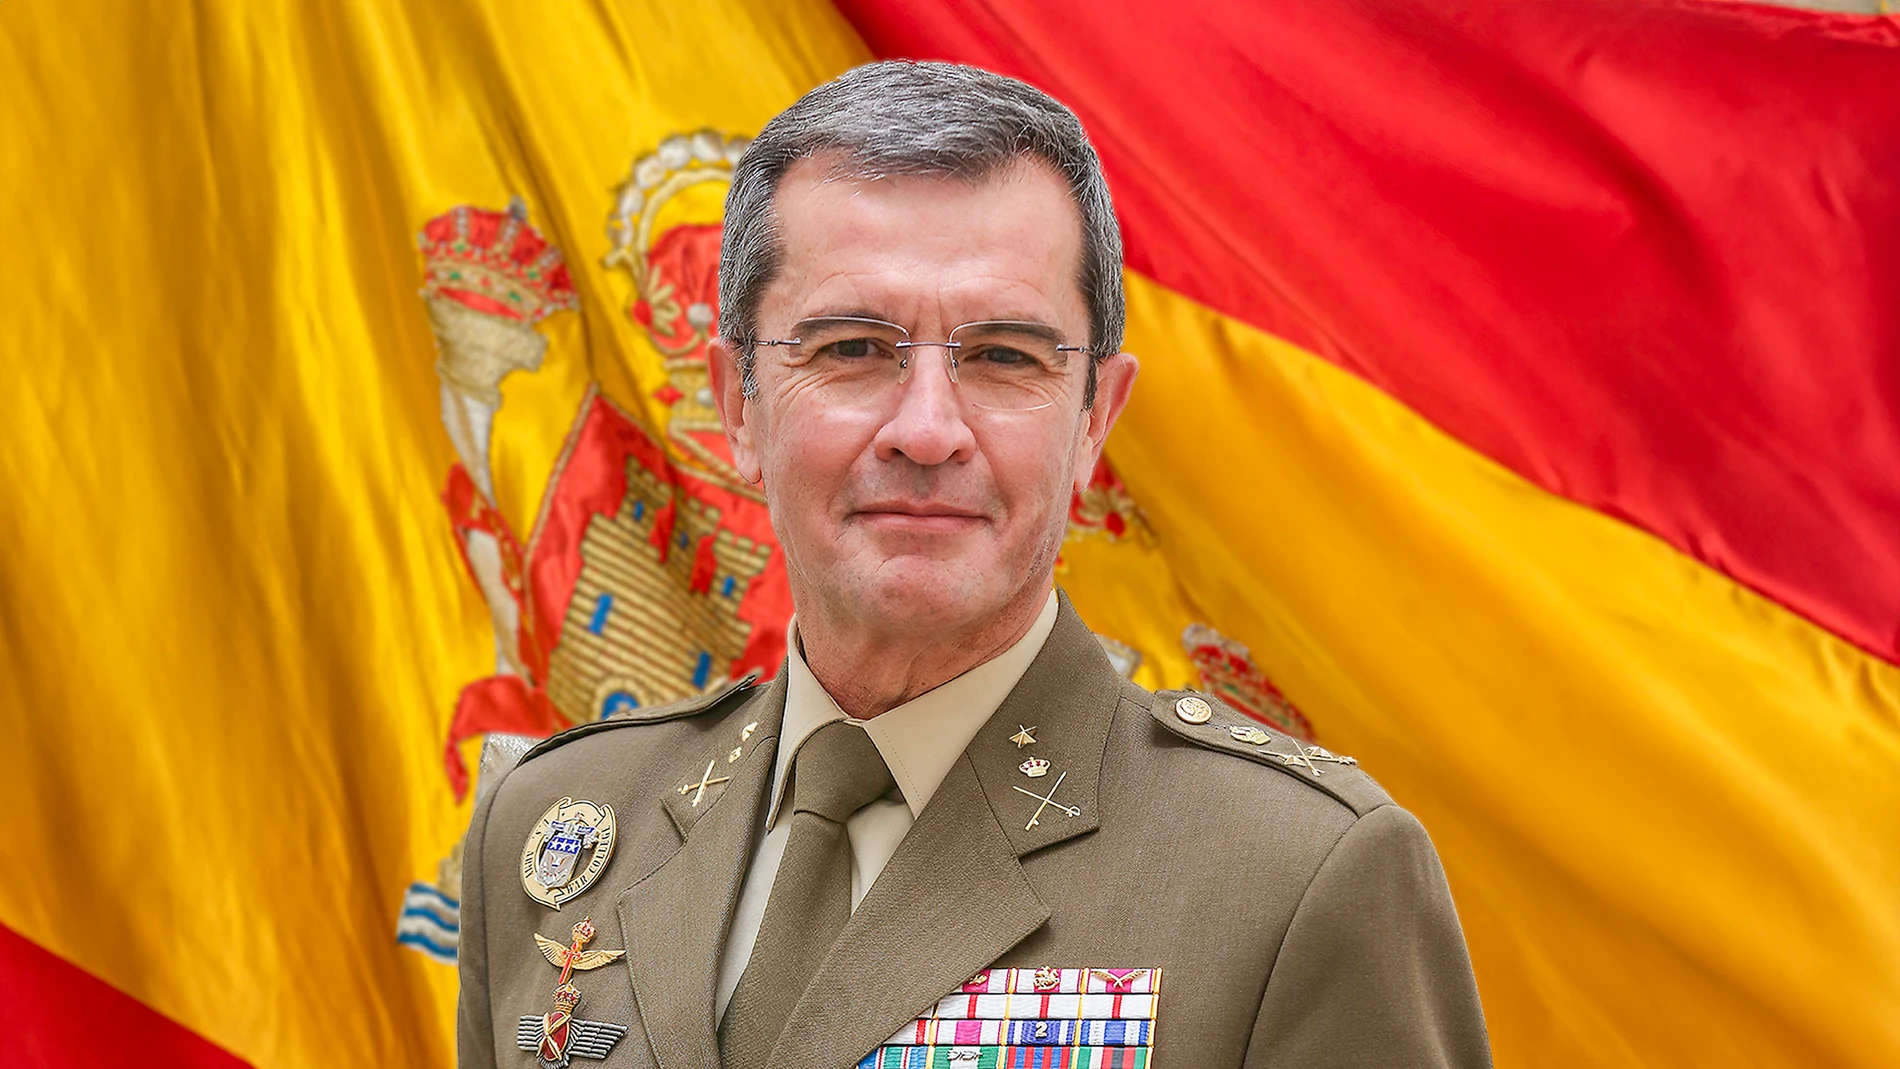 El general de división Francisco Javier Marcos